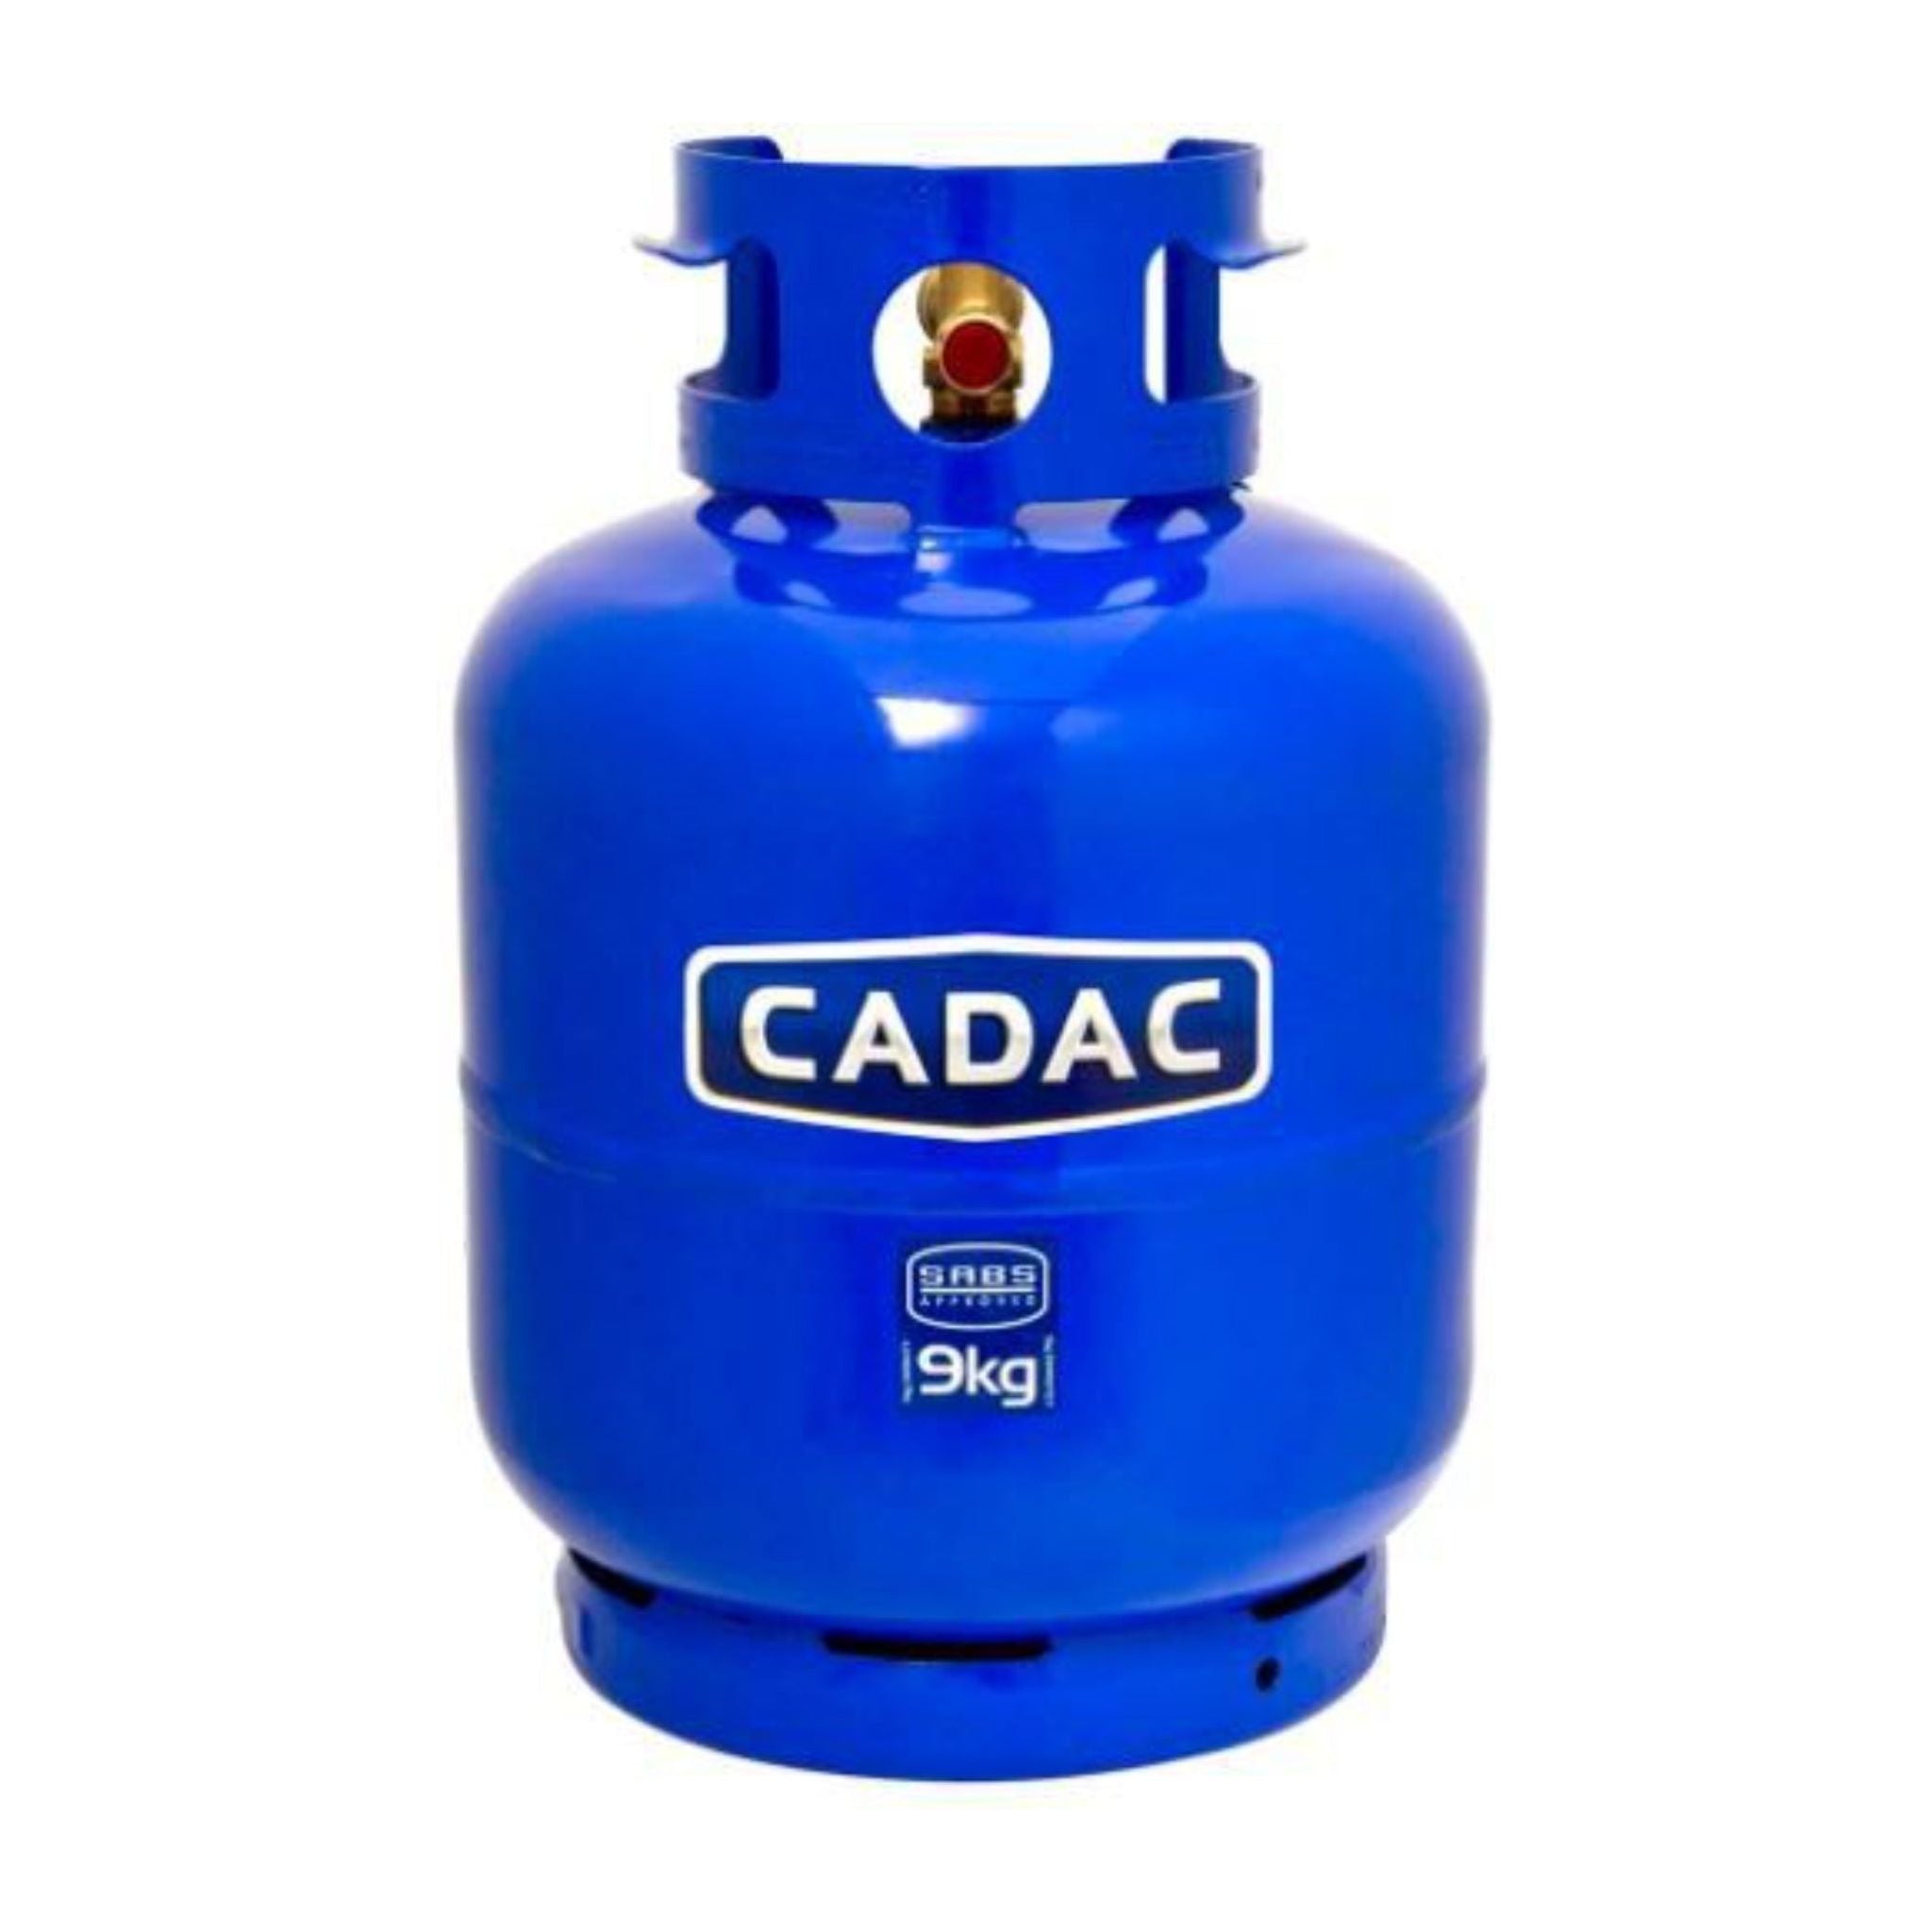 Cadac-9kg Gas Cylinder - Blue